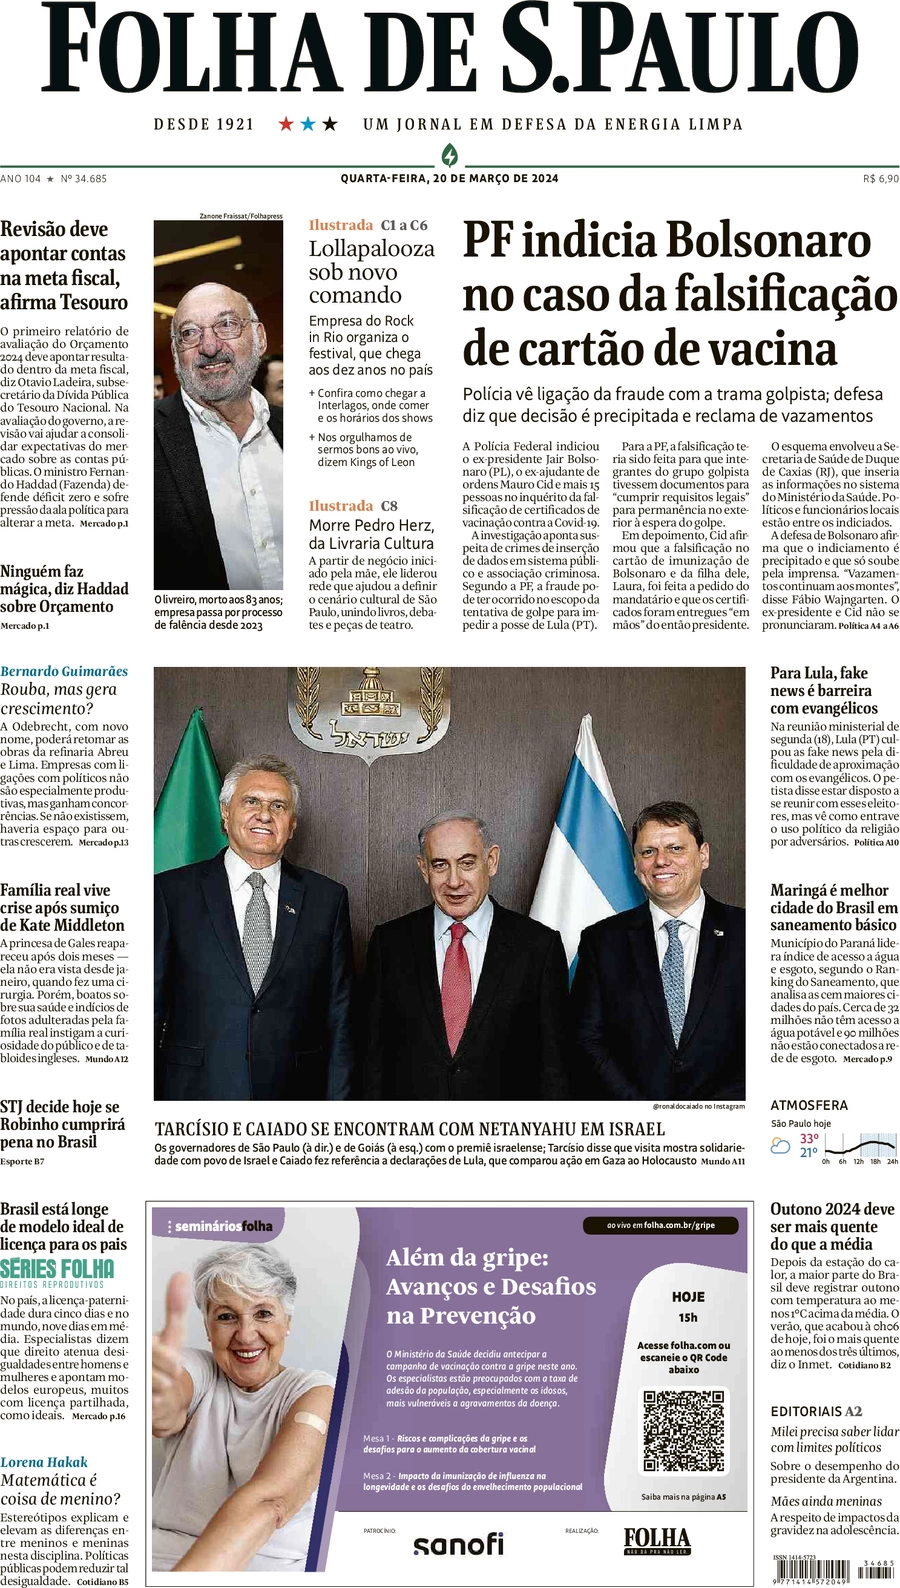 Anteprima prima pagina della rasegna stampa di ieri 2024-03-21 - folha-de-s-paulo/